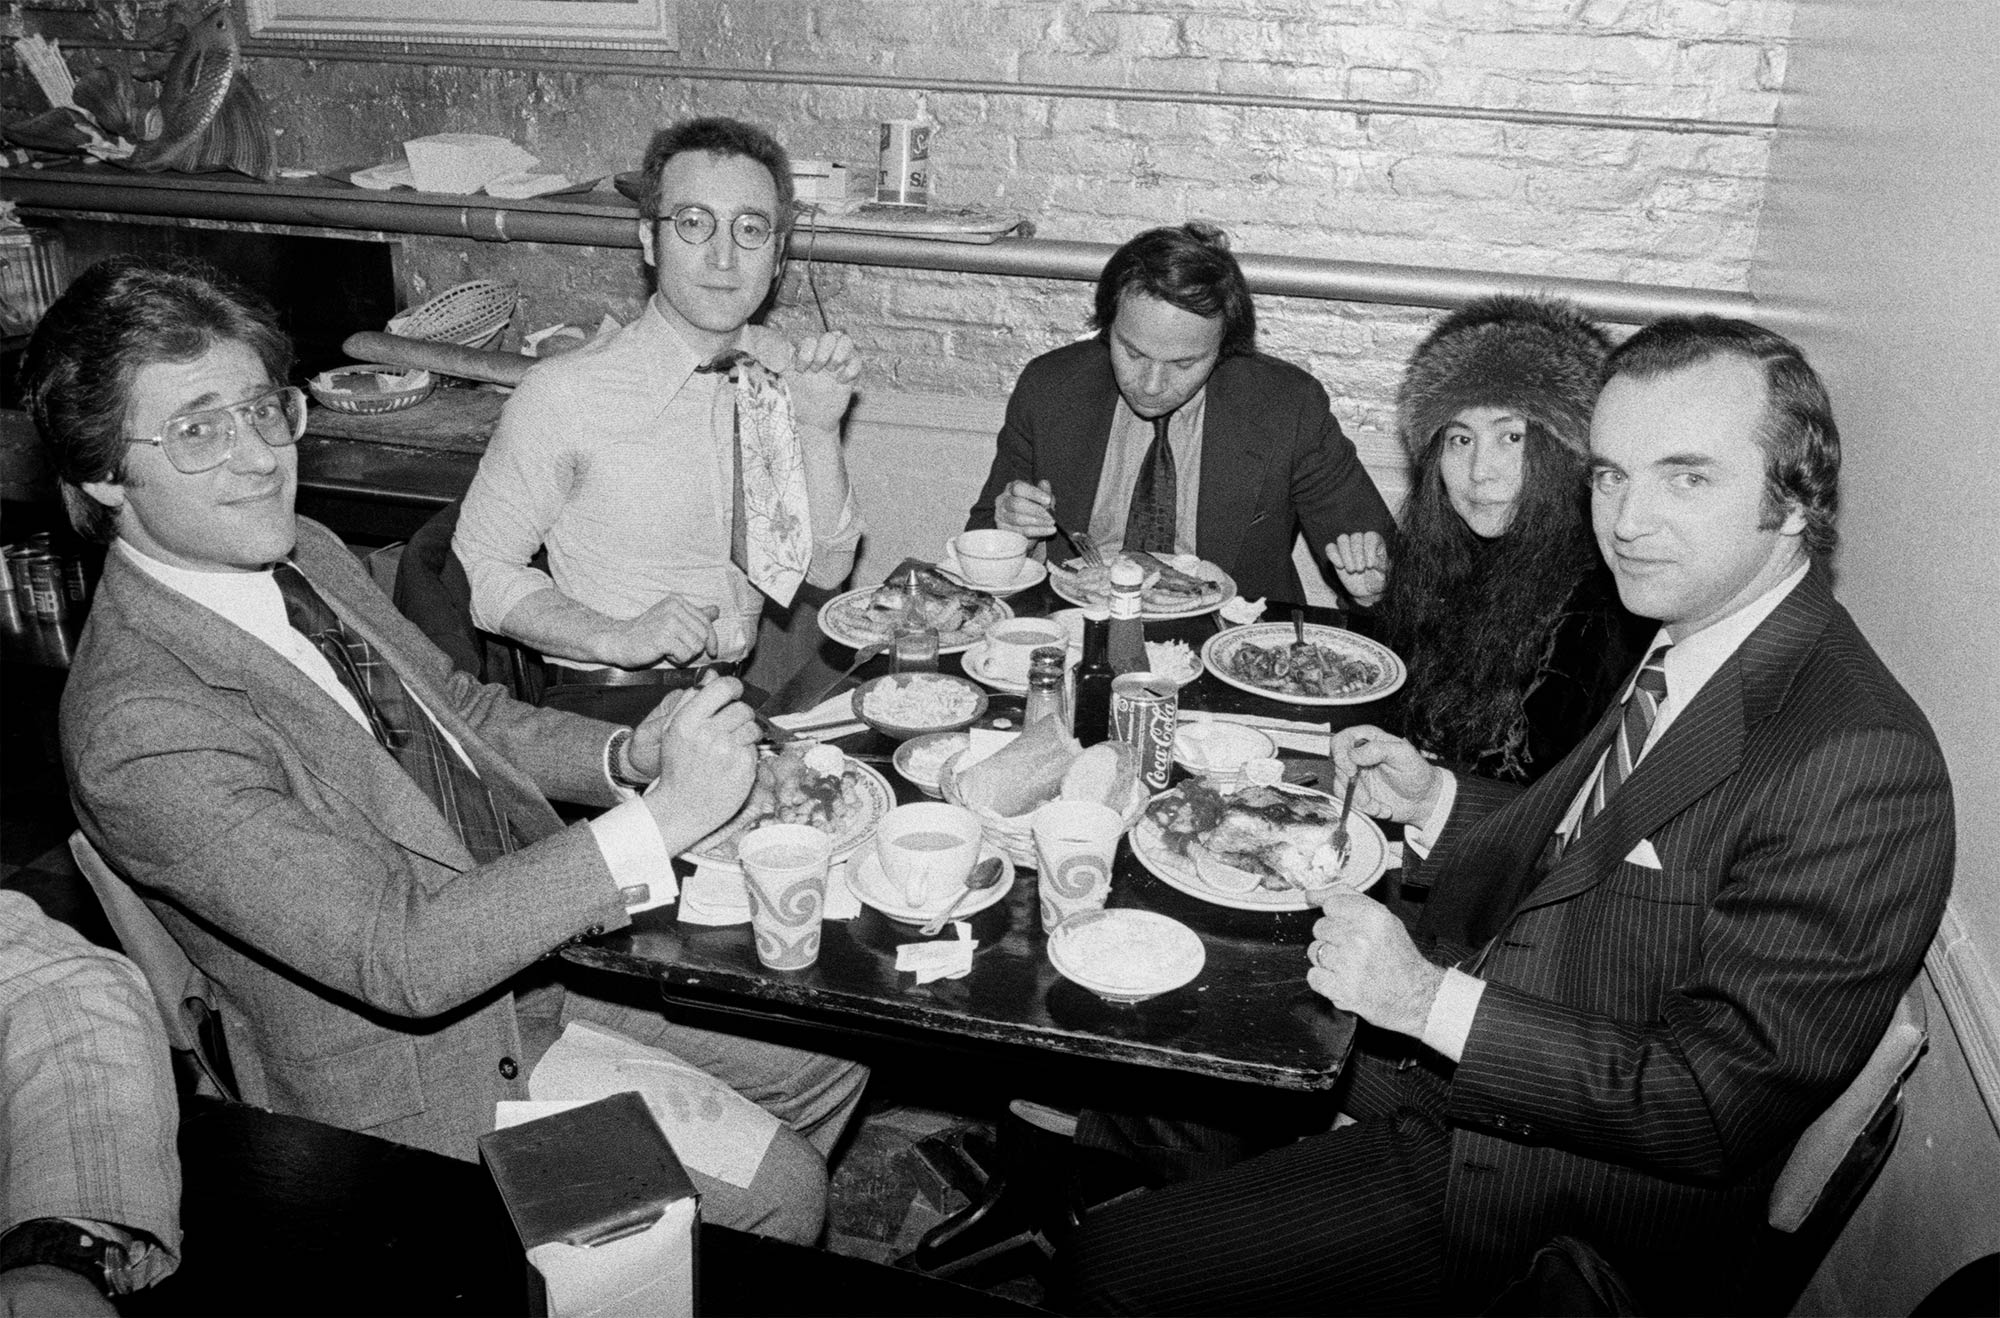 Jay Bergen with John Lennon and Yoko Ono